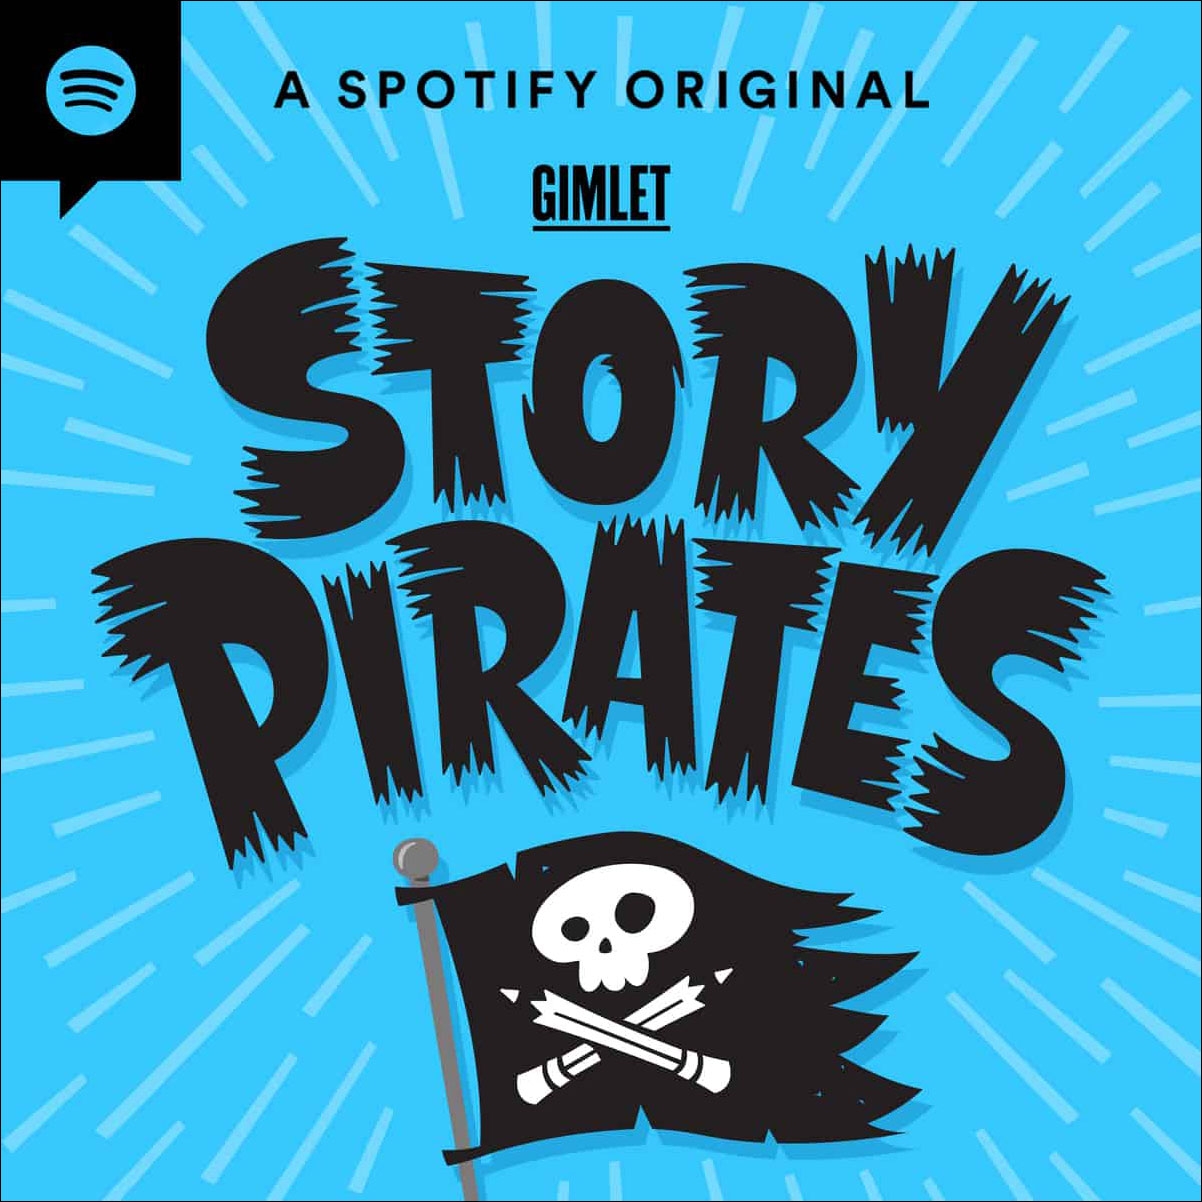 ستوري بايرتس (Story Pirates)